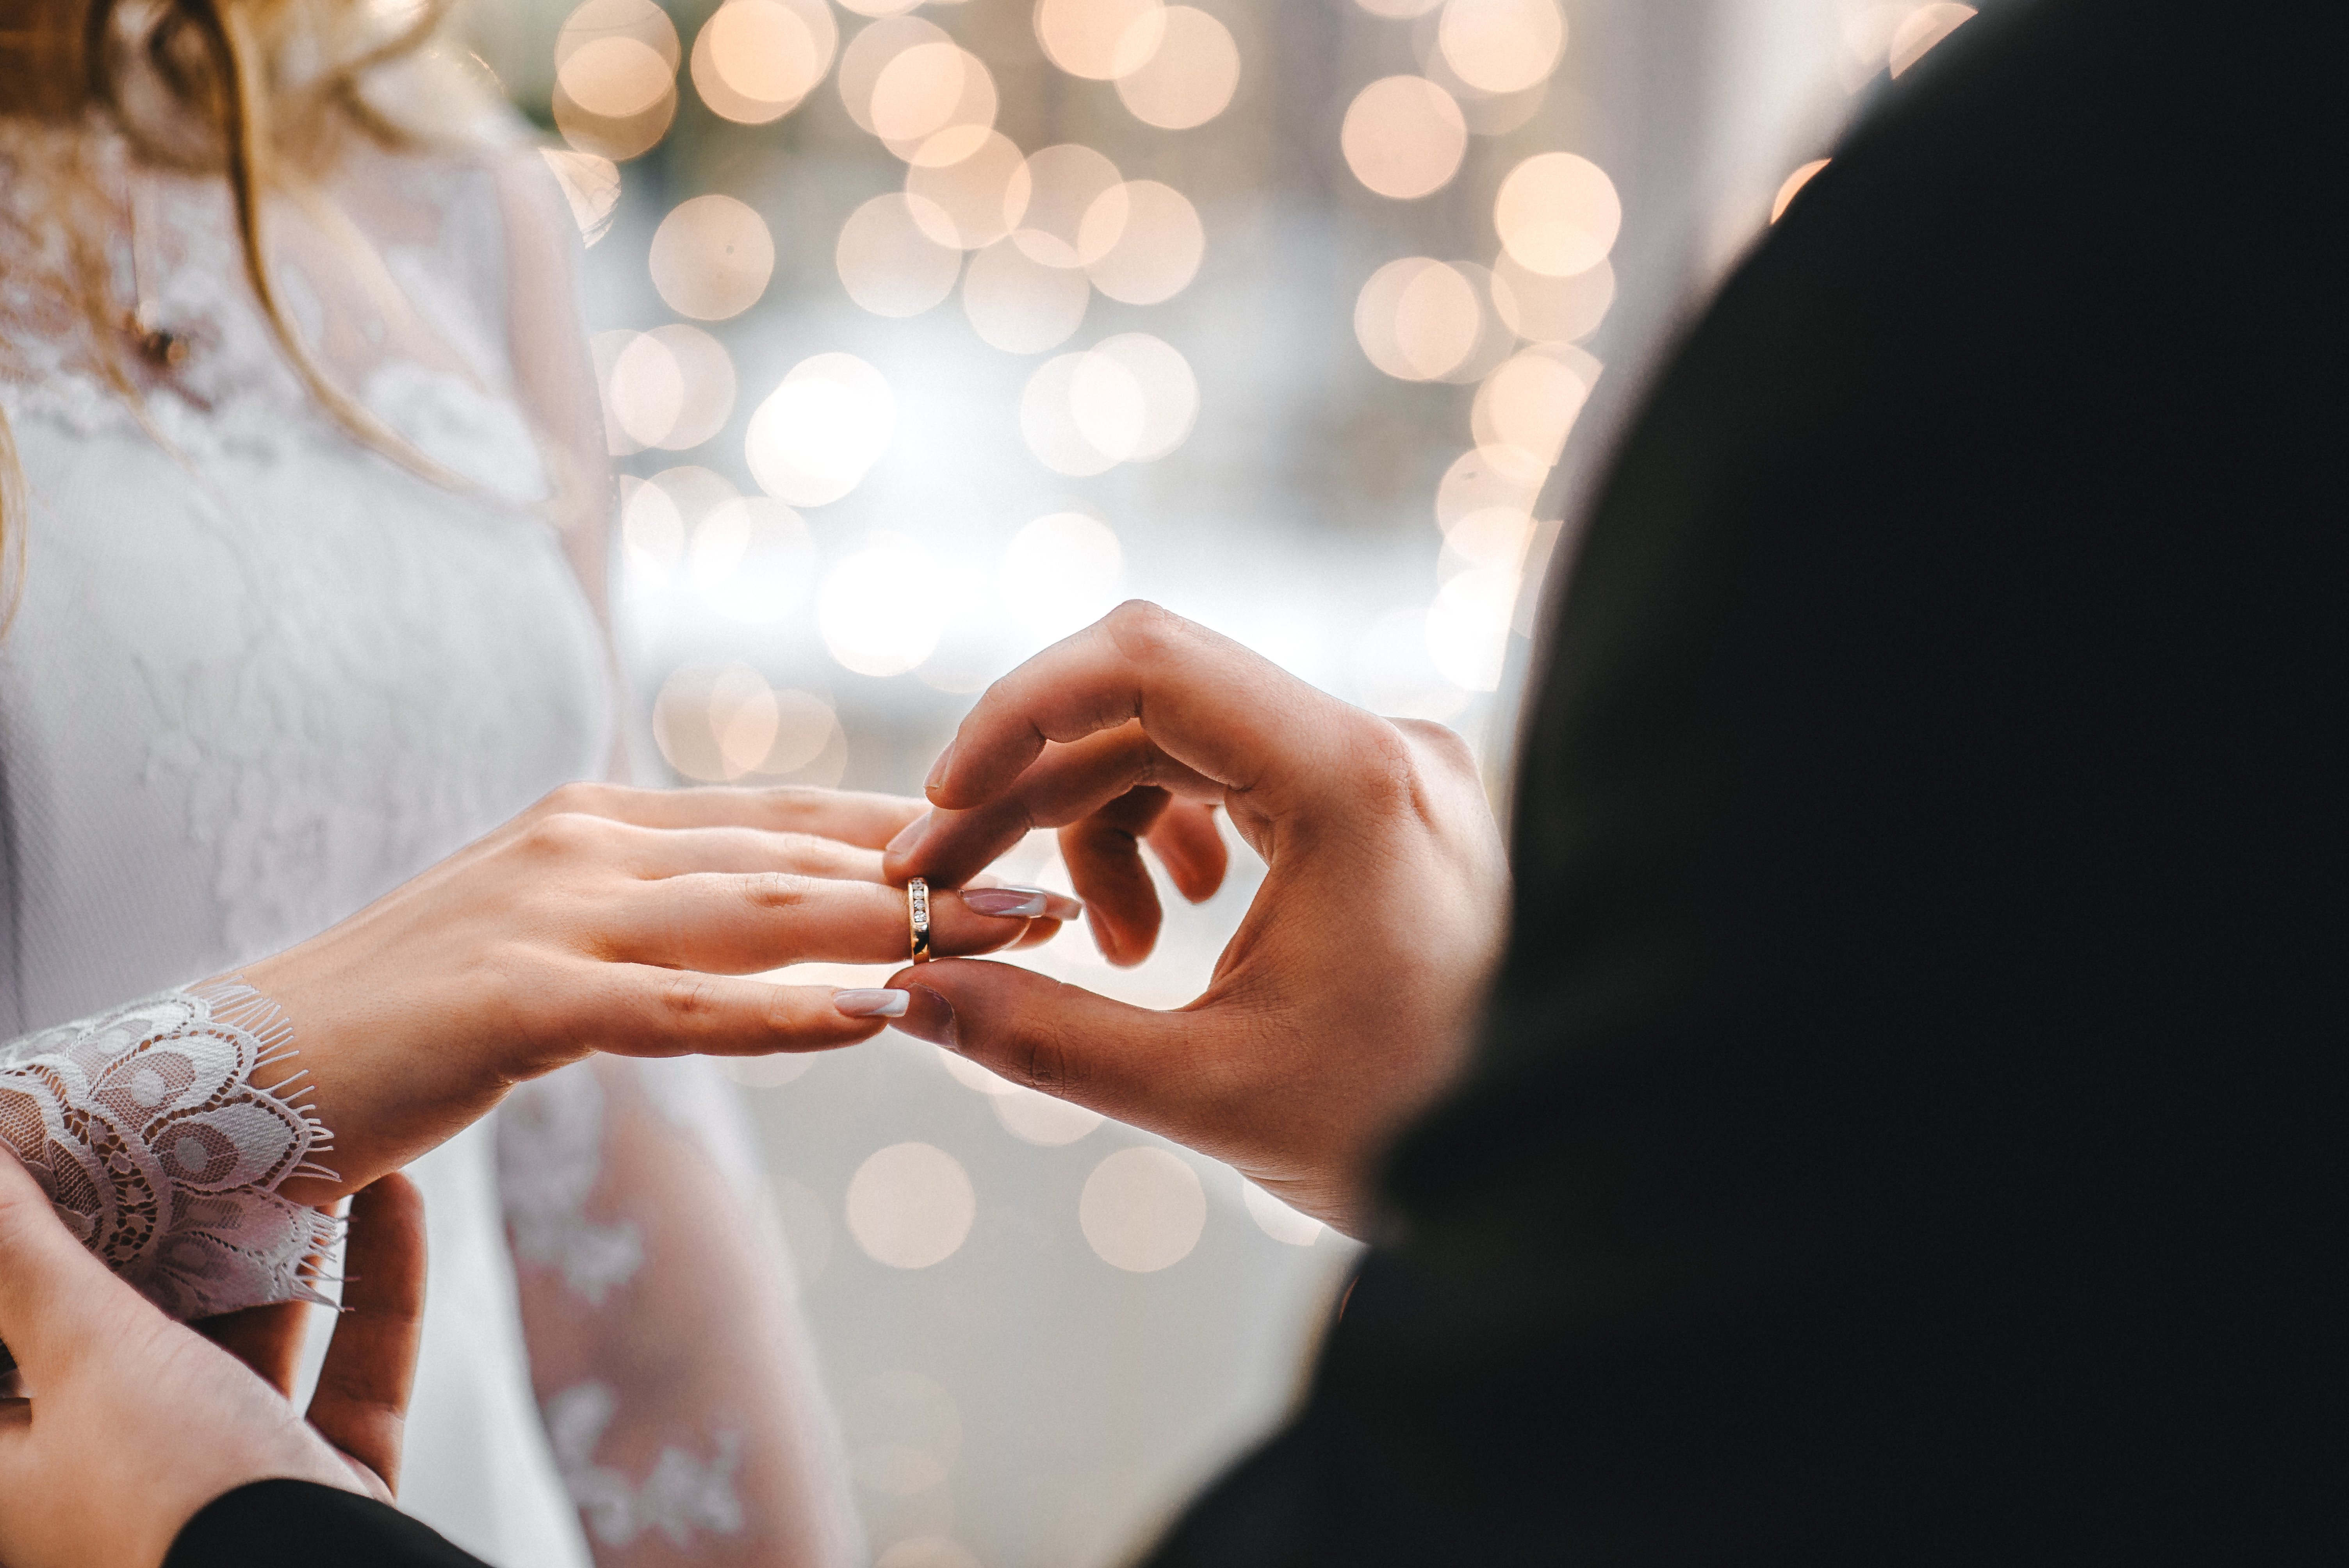 Ein Mann und eine Frau während ihrer Verlobung | Quelle: Shutterstock